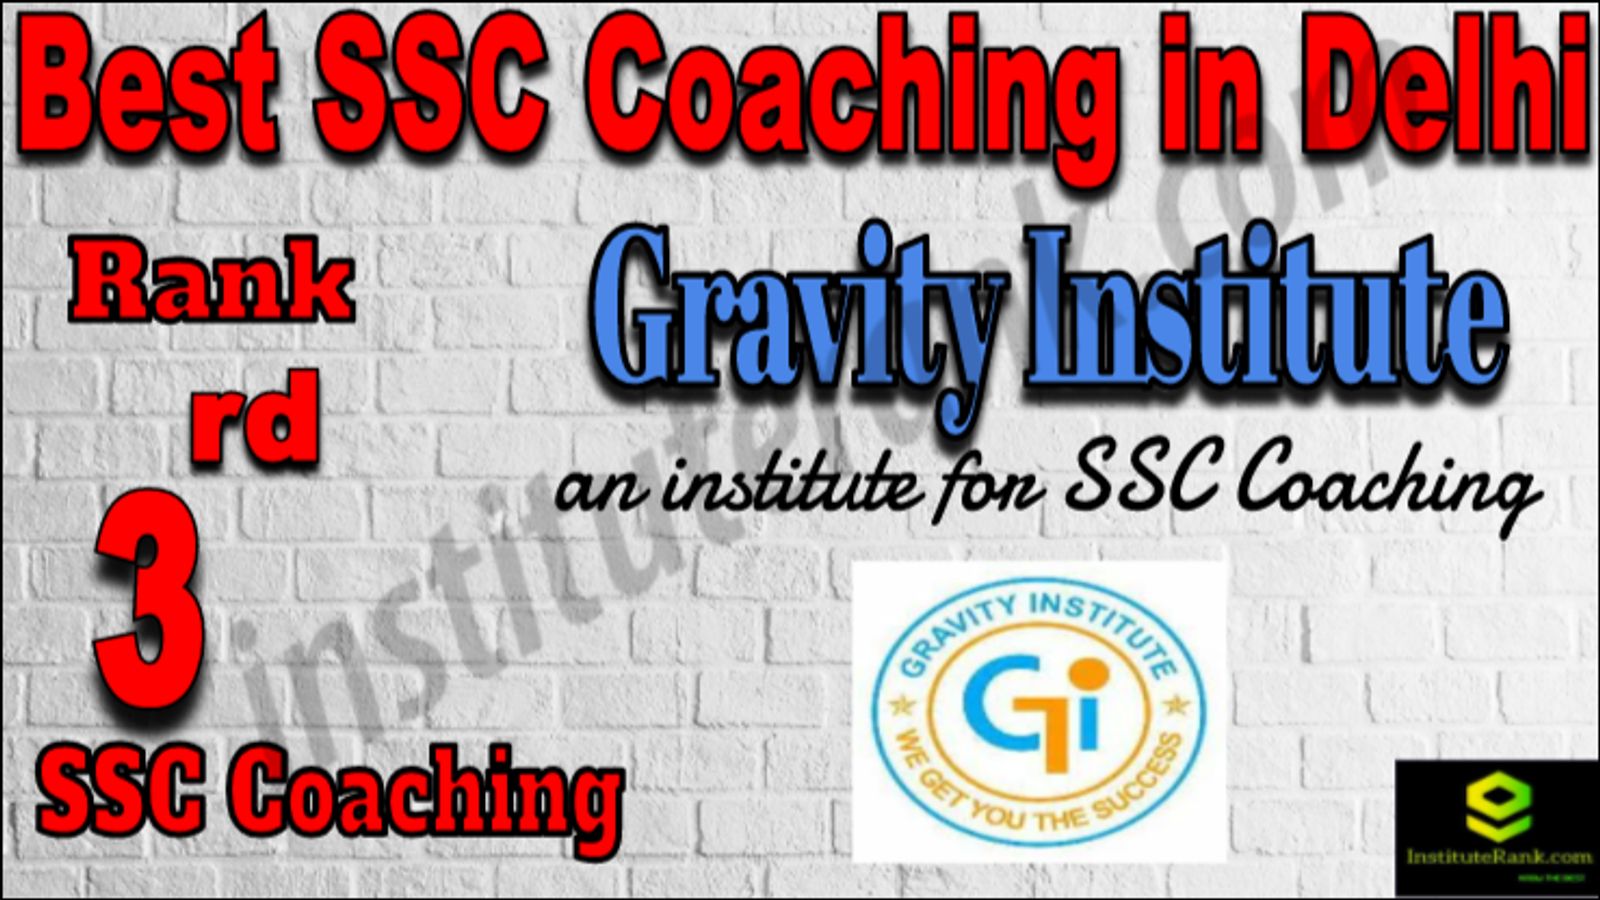 Rank 3 Best SSC Coaching in Delhi